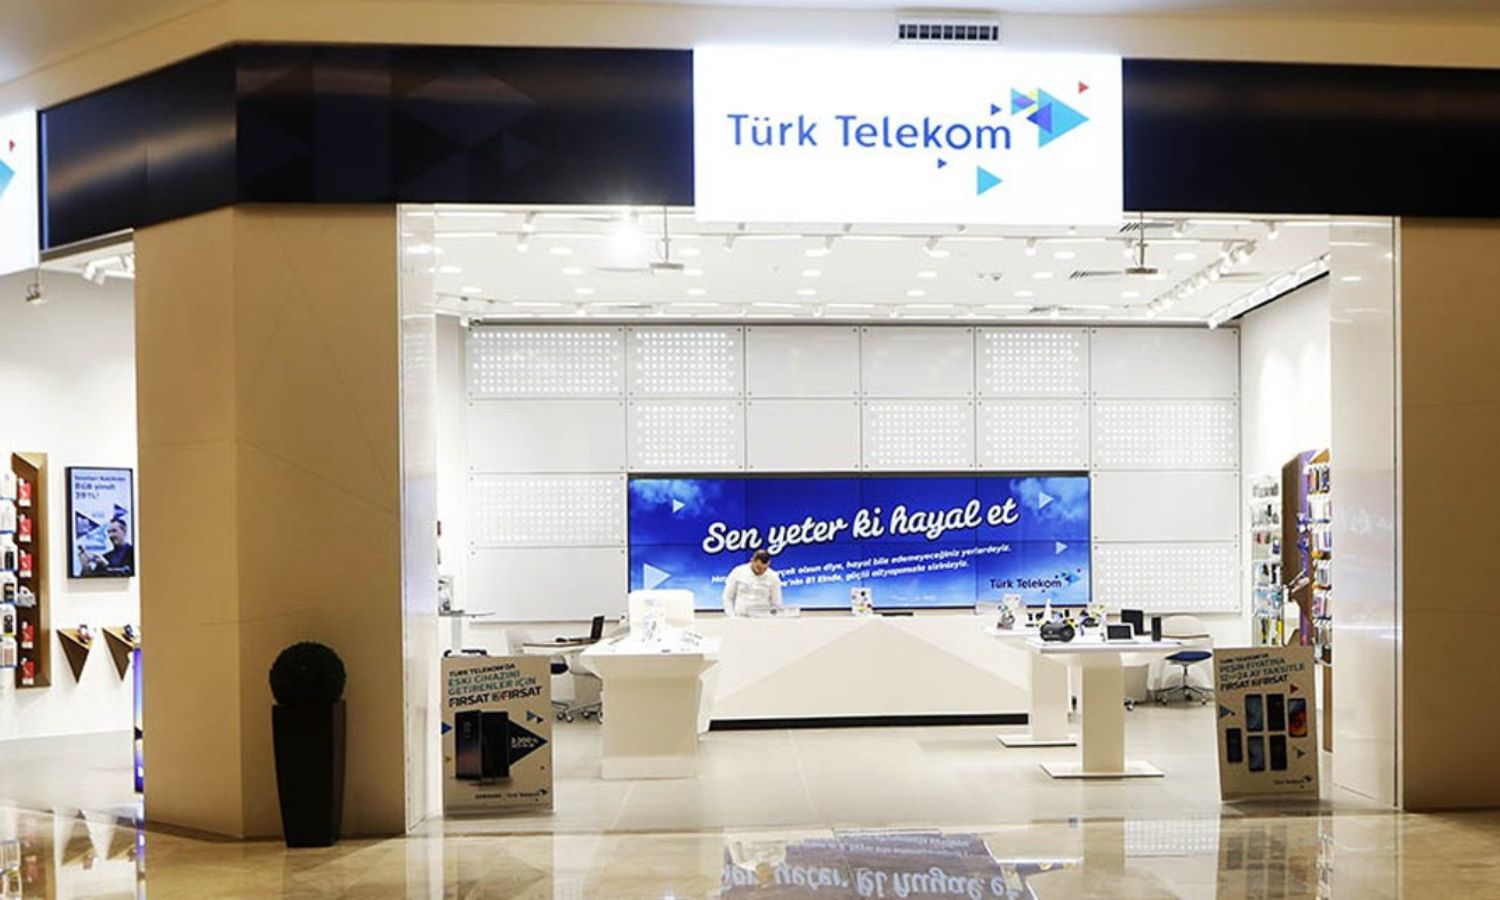 متجر لشركة "تورك تيليكوم" في تركيا (صحيفة دنيا)